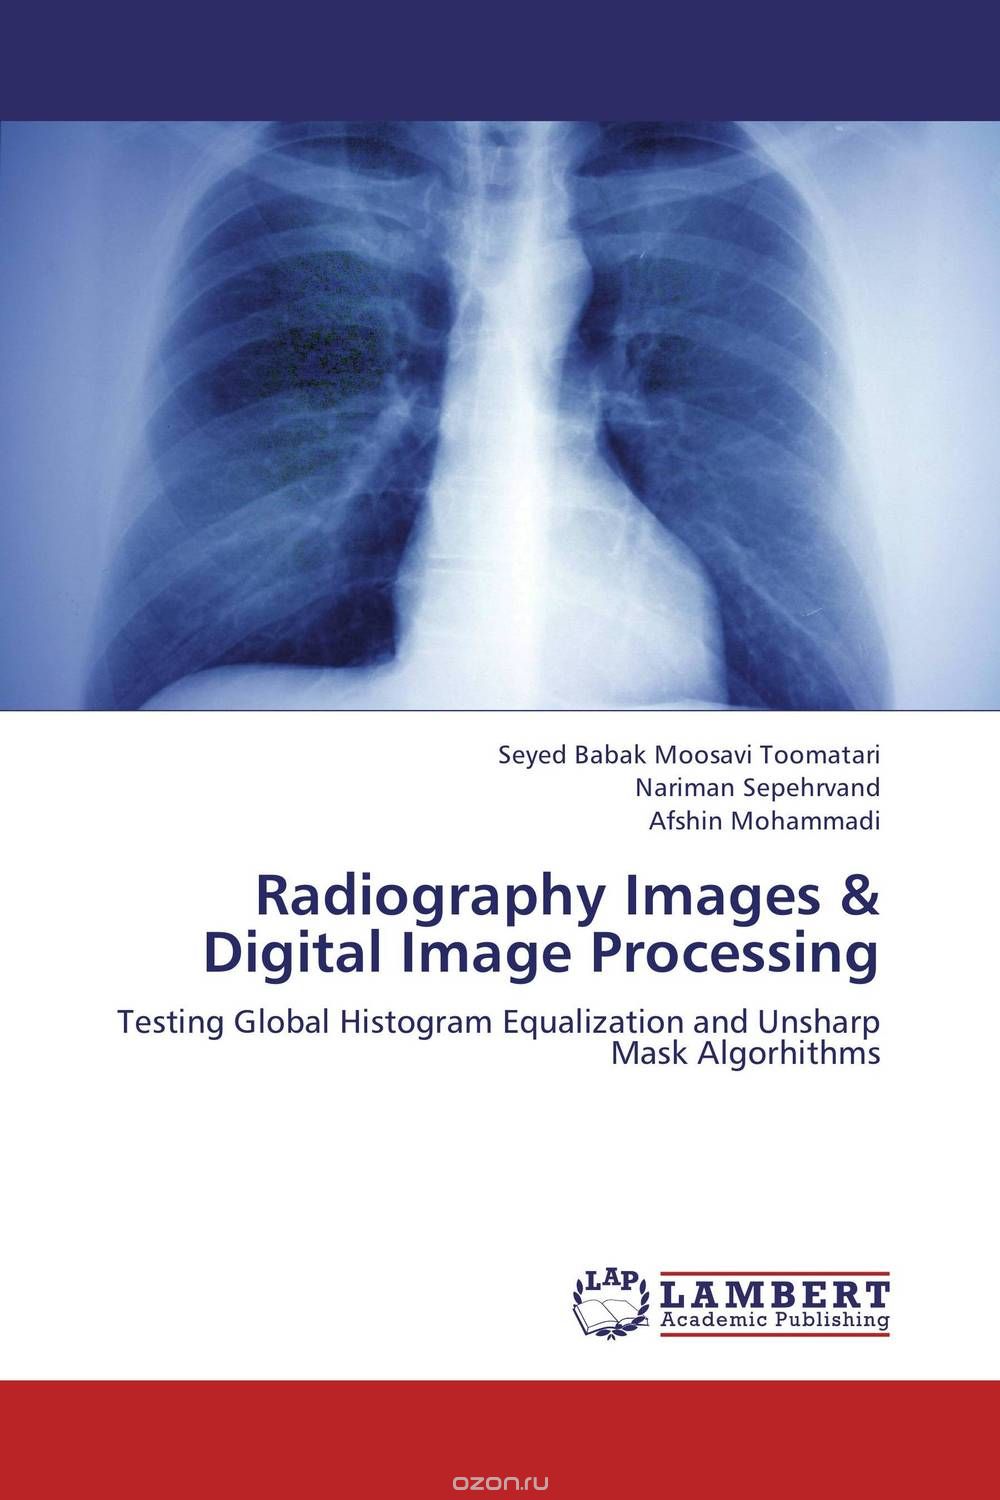 Скачать книгу "Radiography Images & Digital Image Processing"